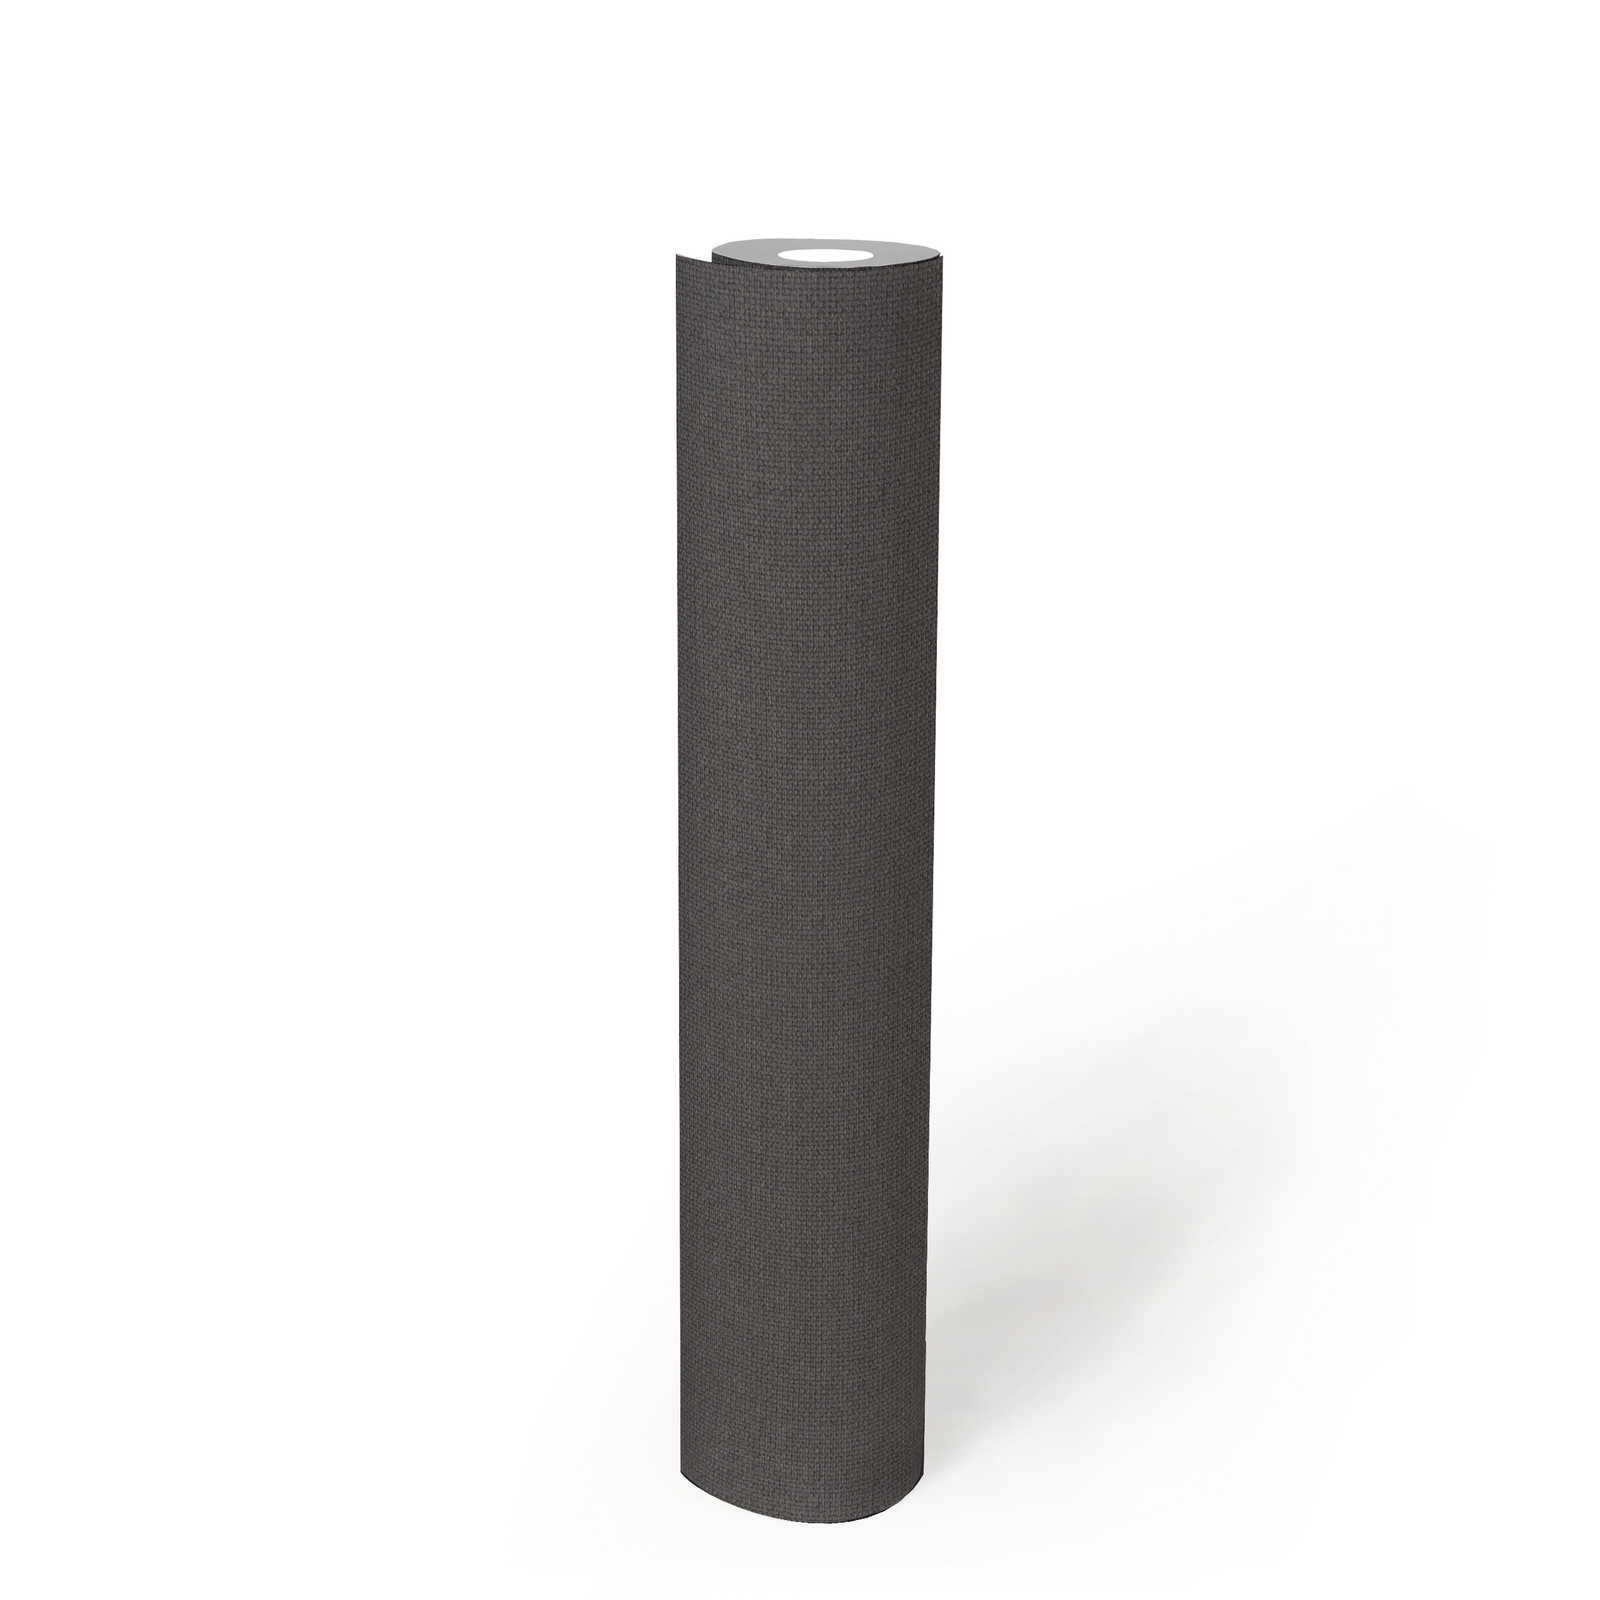             aspect lin papier peint uni avec dessin structuré - gris, noir
        